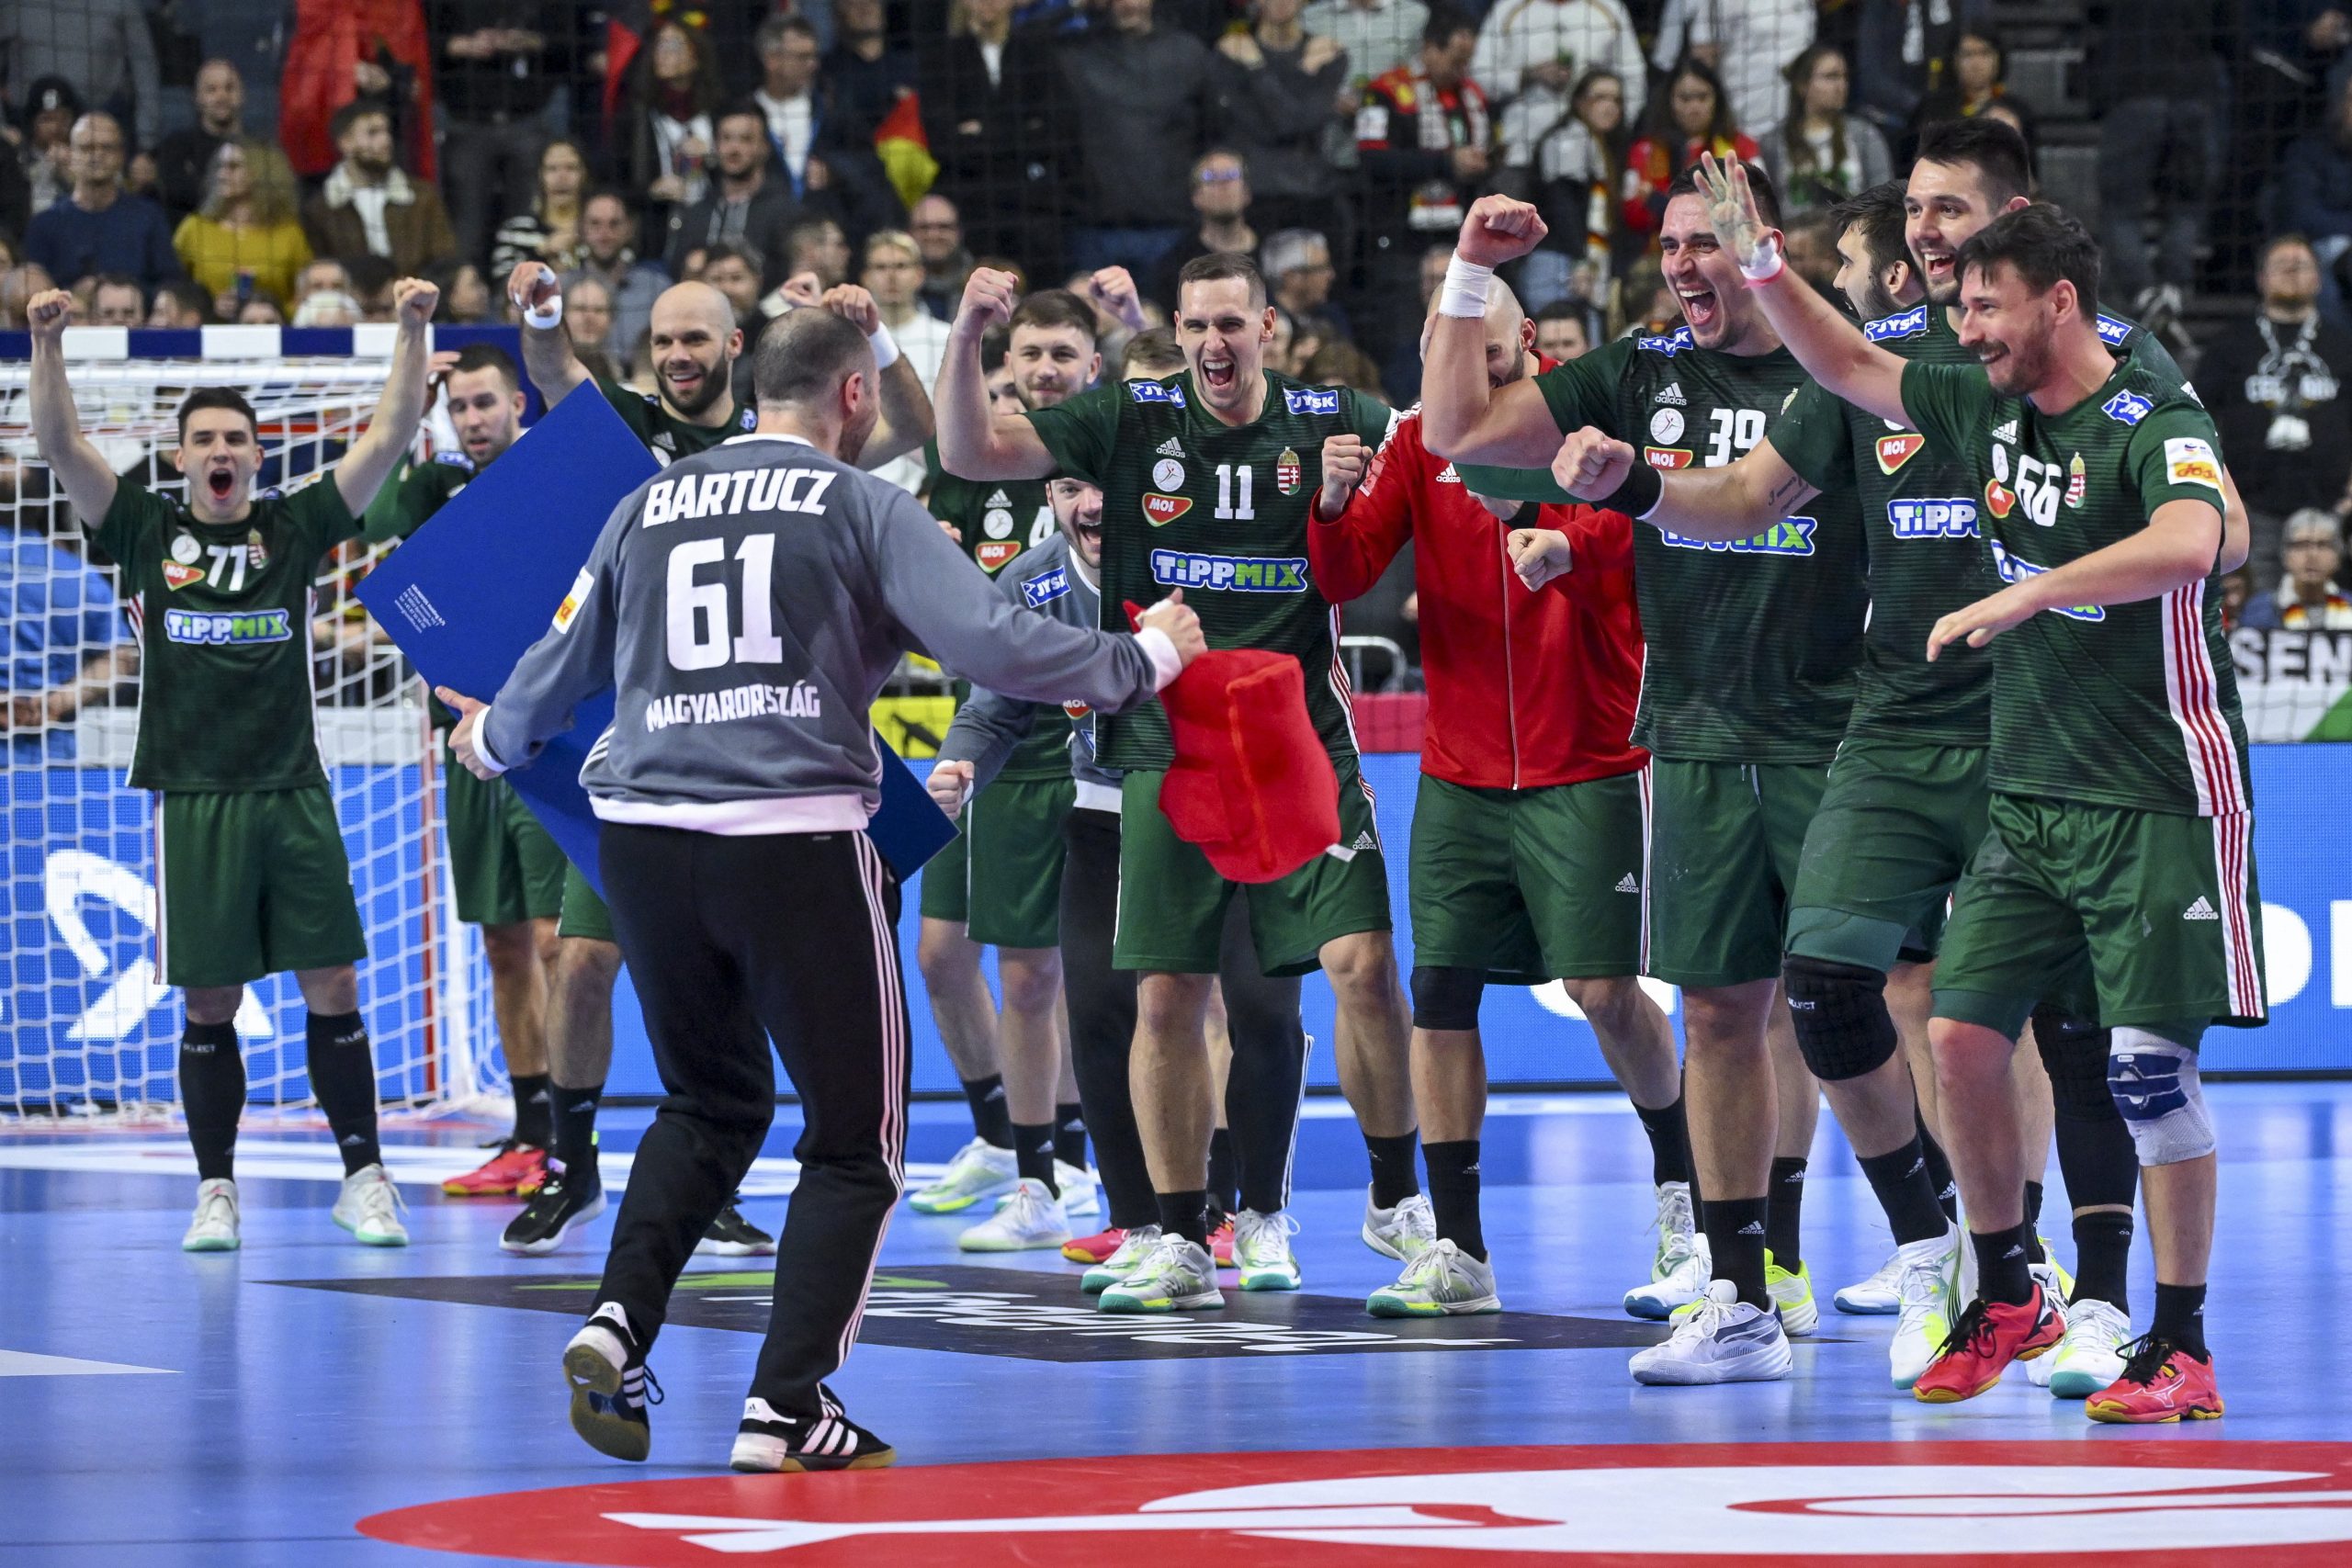 Hoffnung auf das Erreichen des EM-Halbfinales lebt für die Handballnationalmannschaft wieder auf